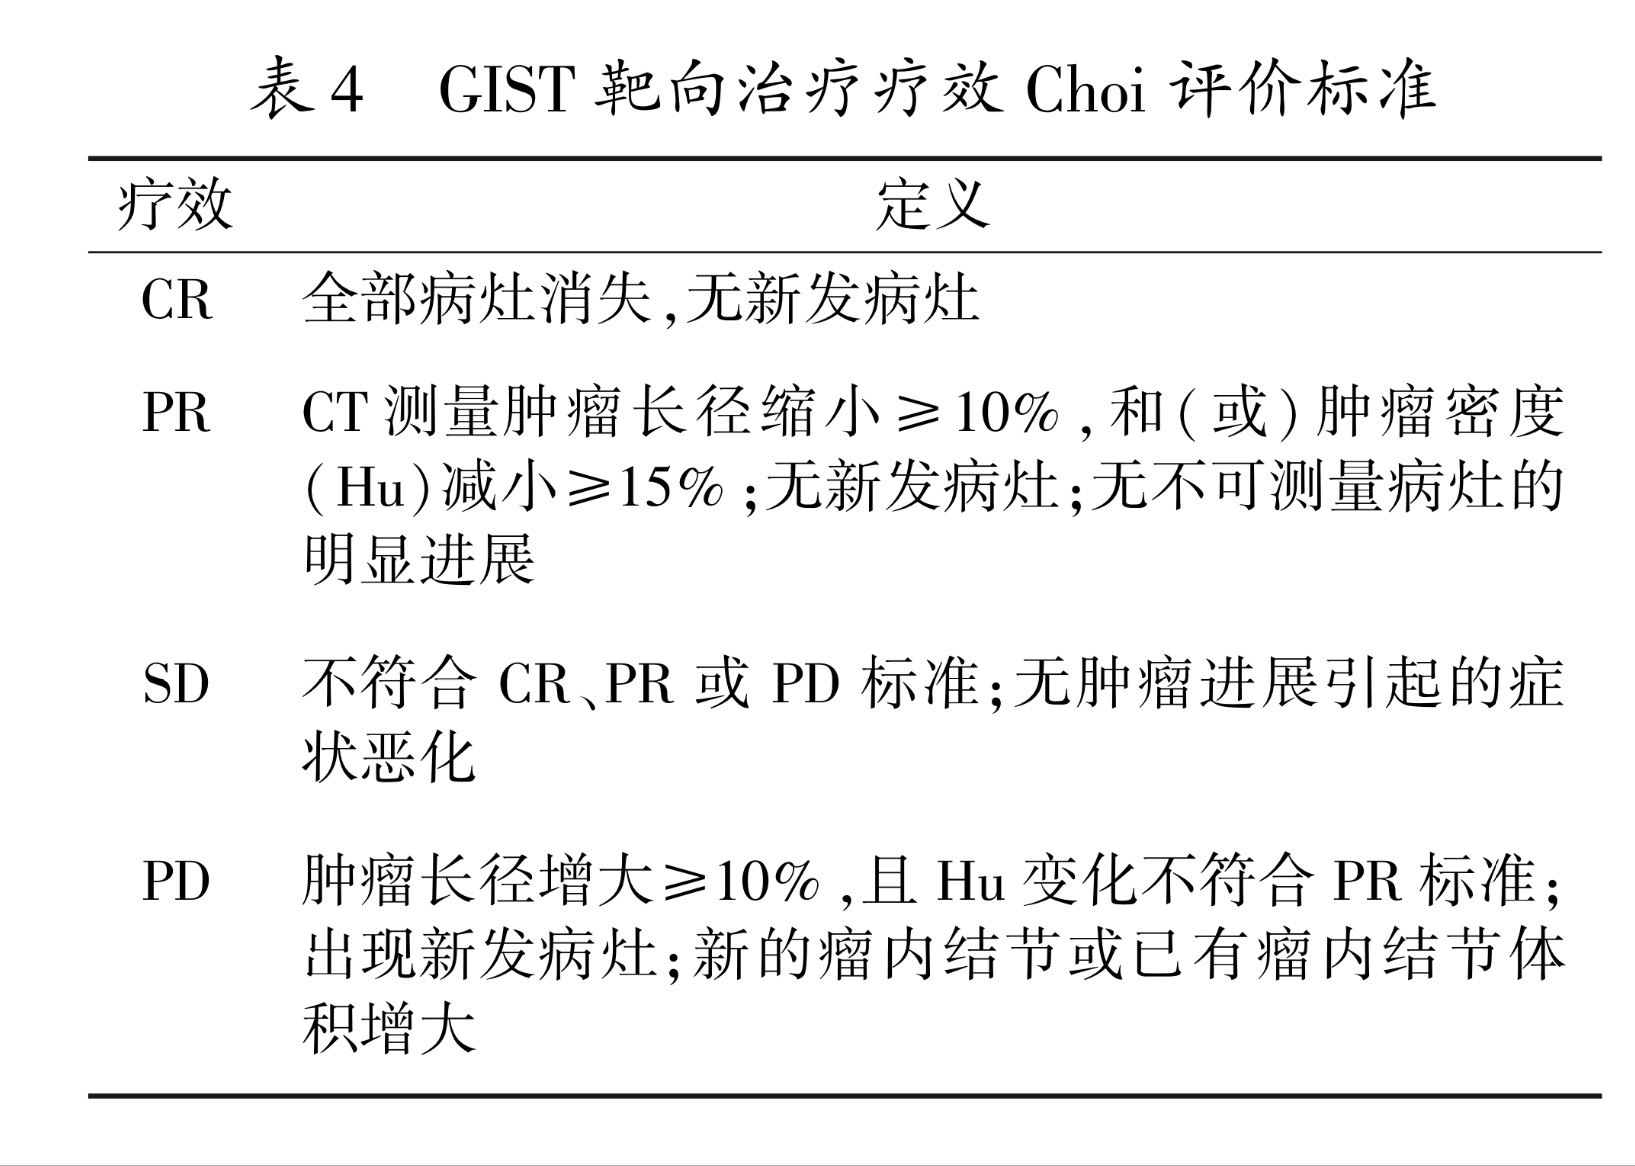 中国胃肠间质瘤诊断治疗共识(2013年版)